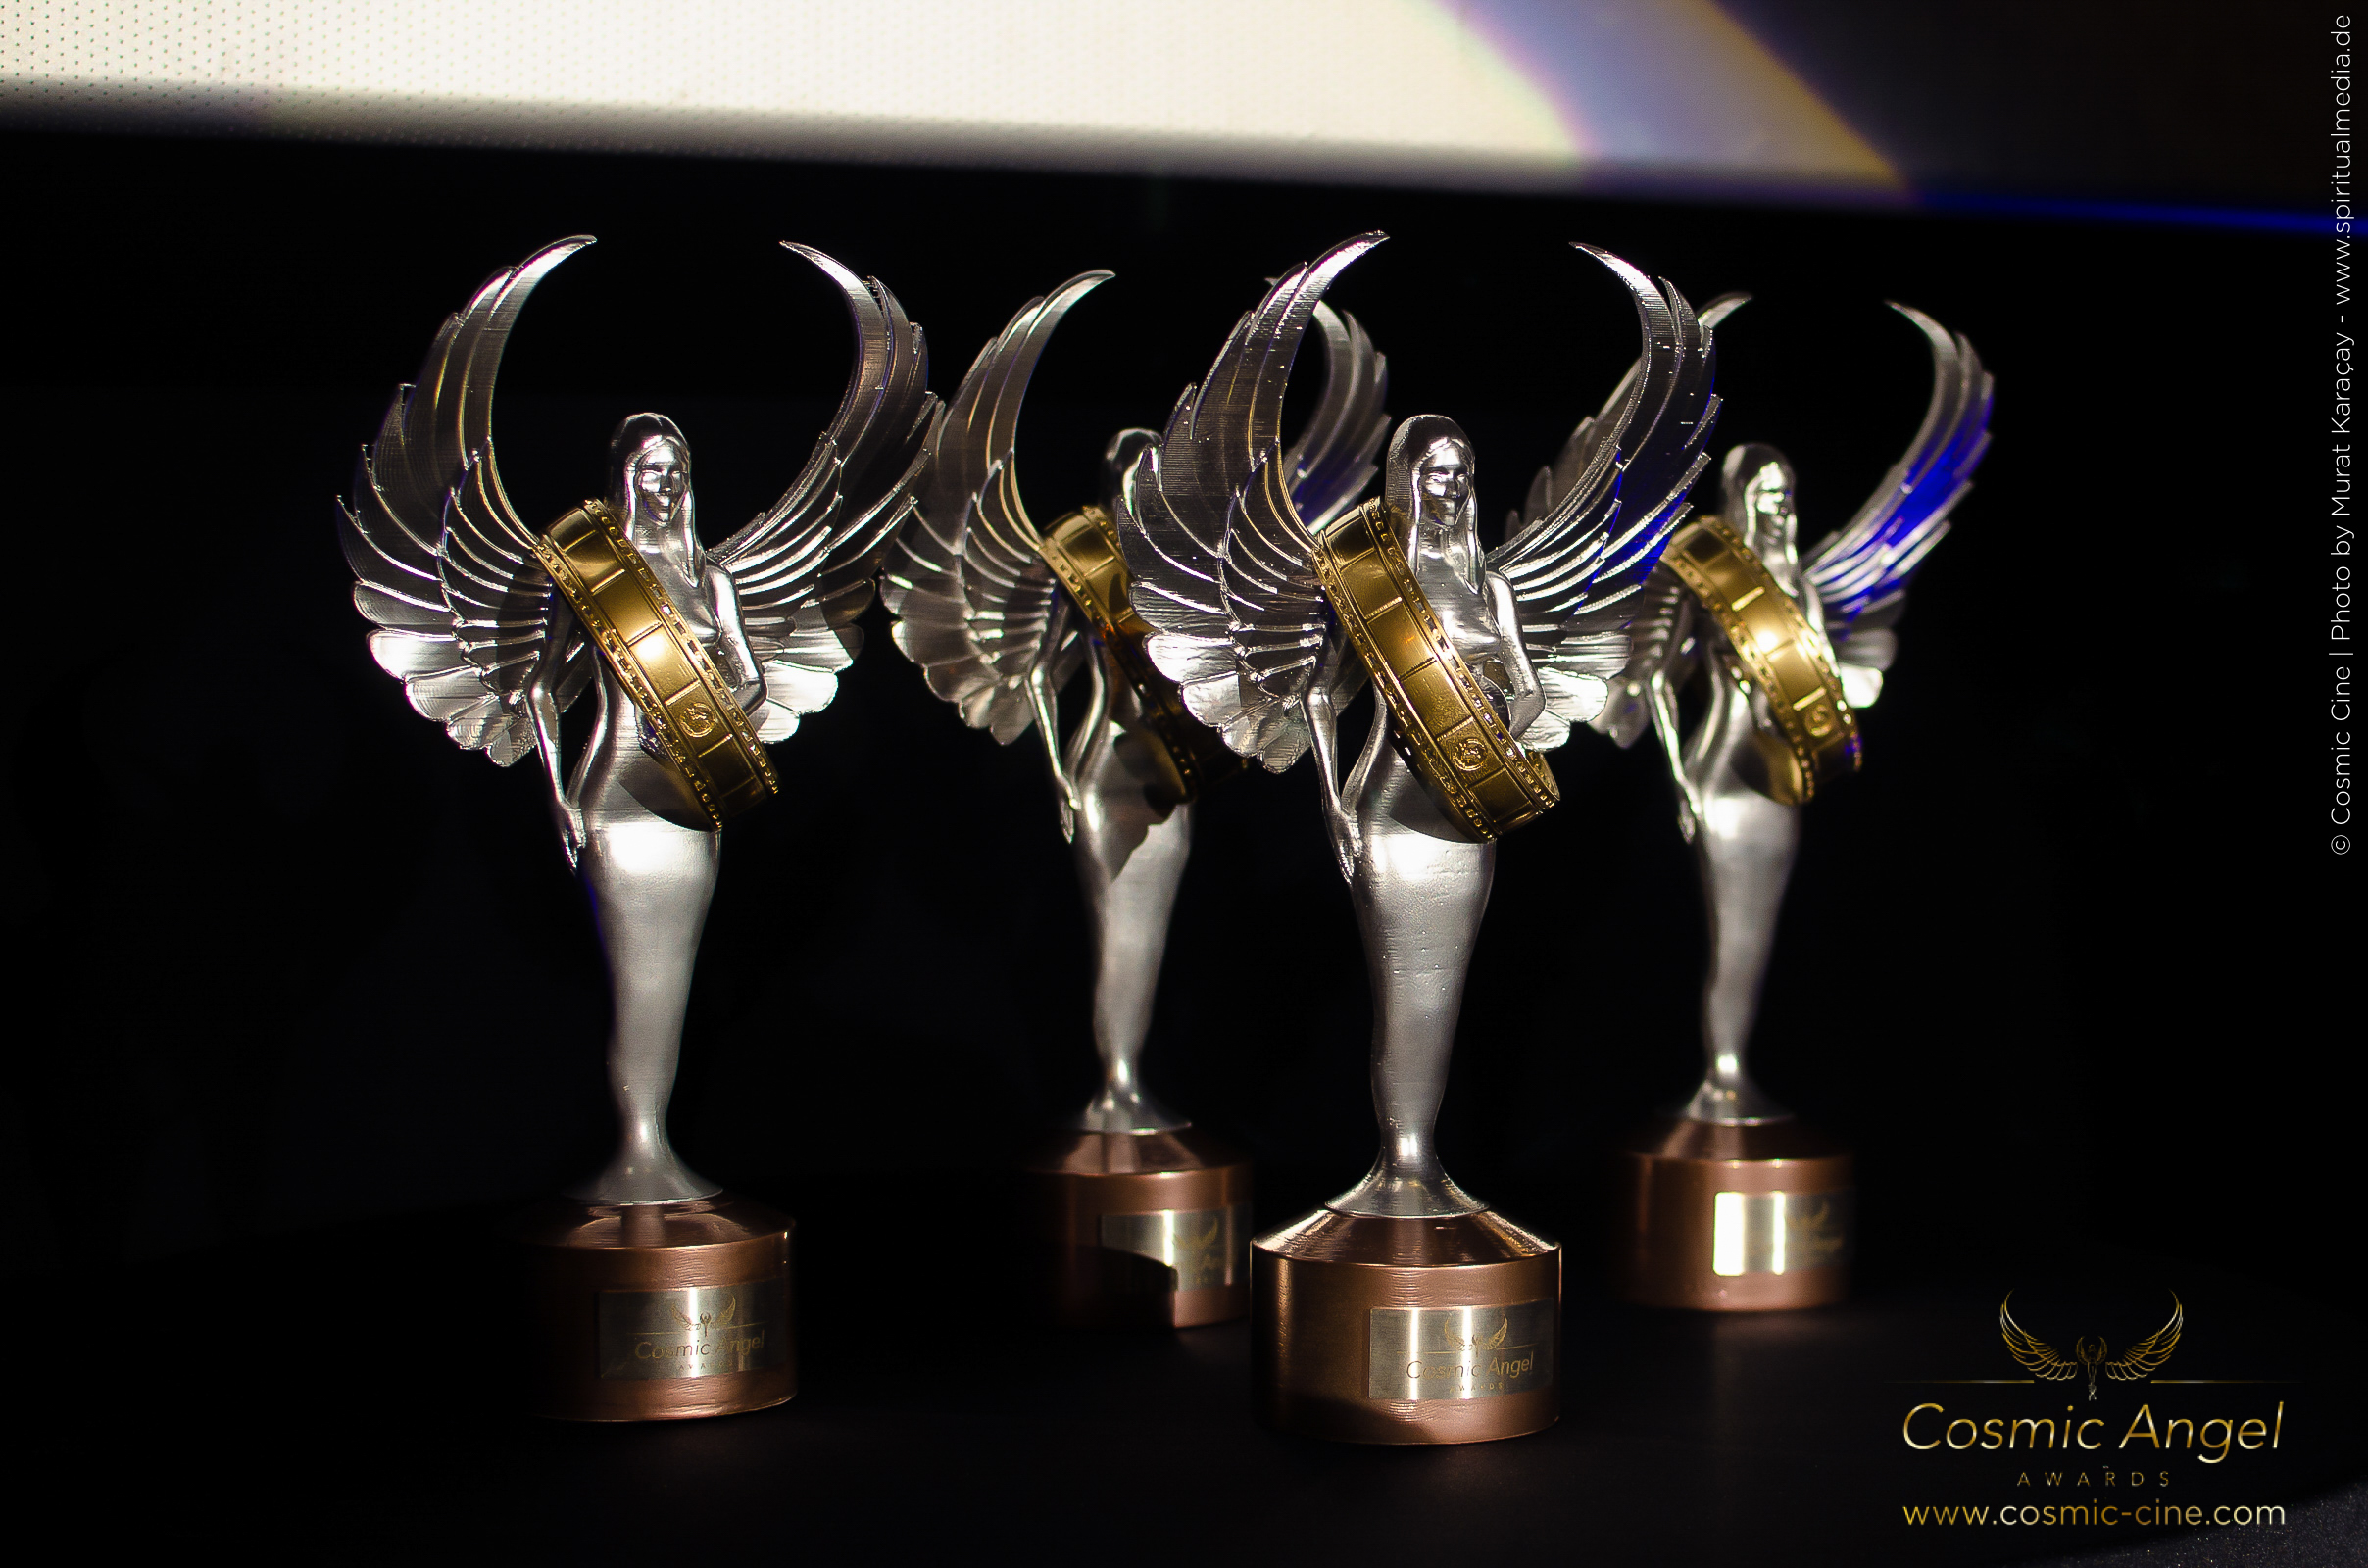 Cosmic Angel AWARDS - Cosmic Cine Filmfestival-221